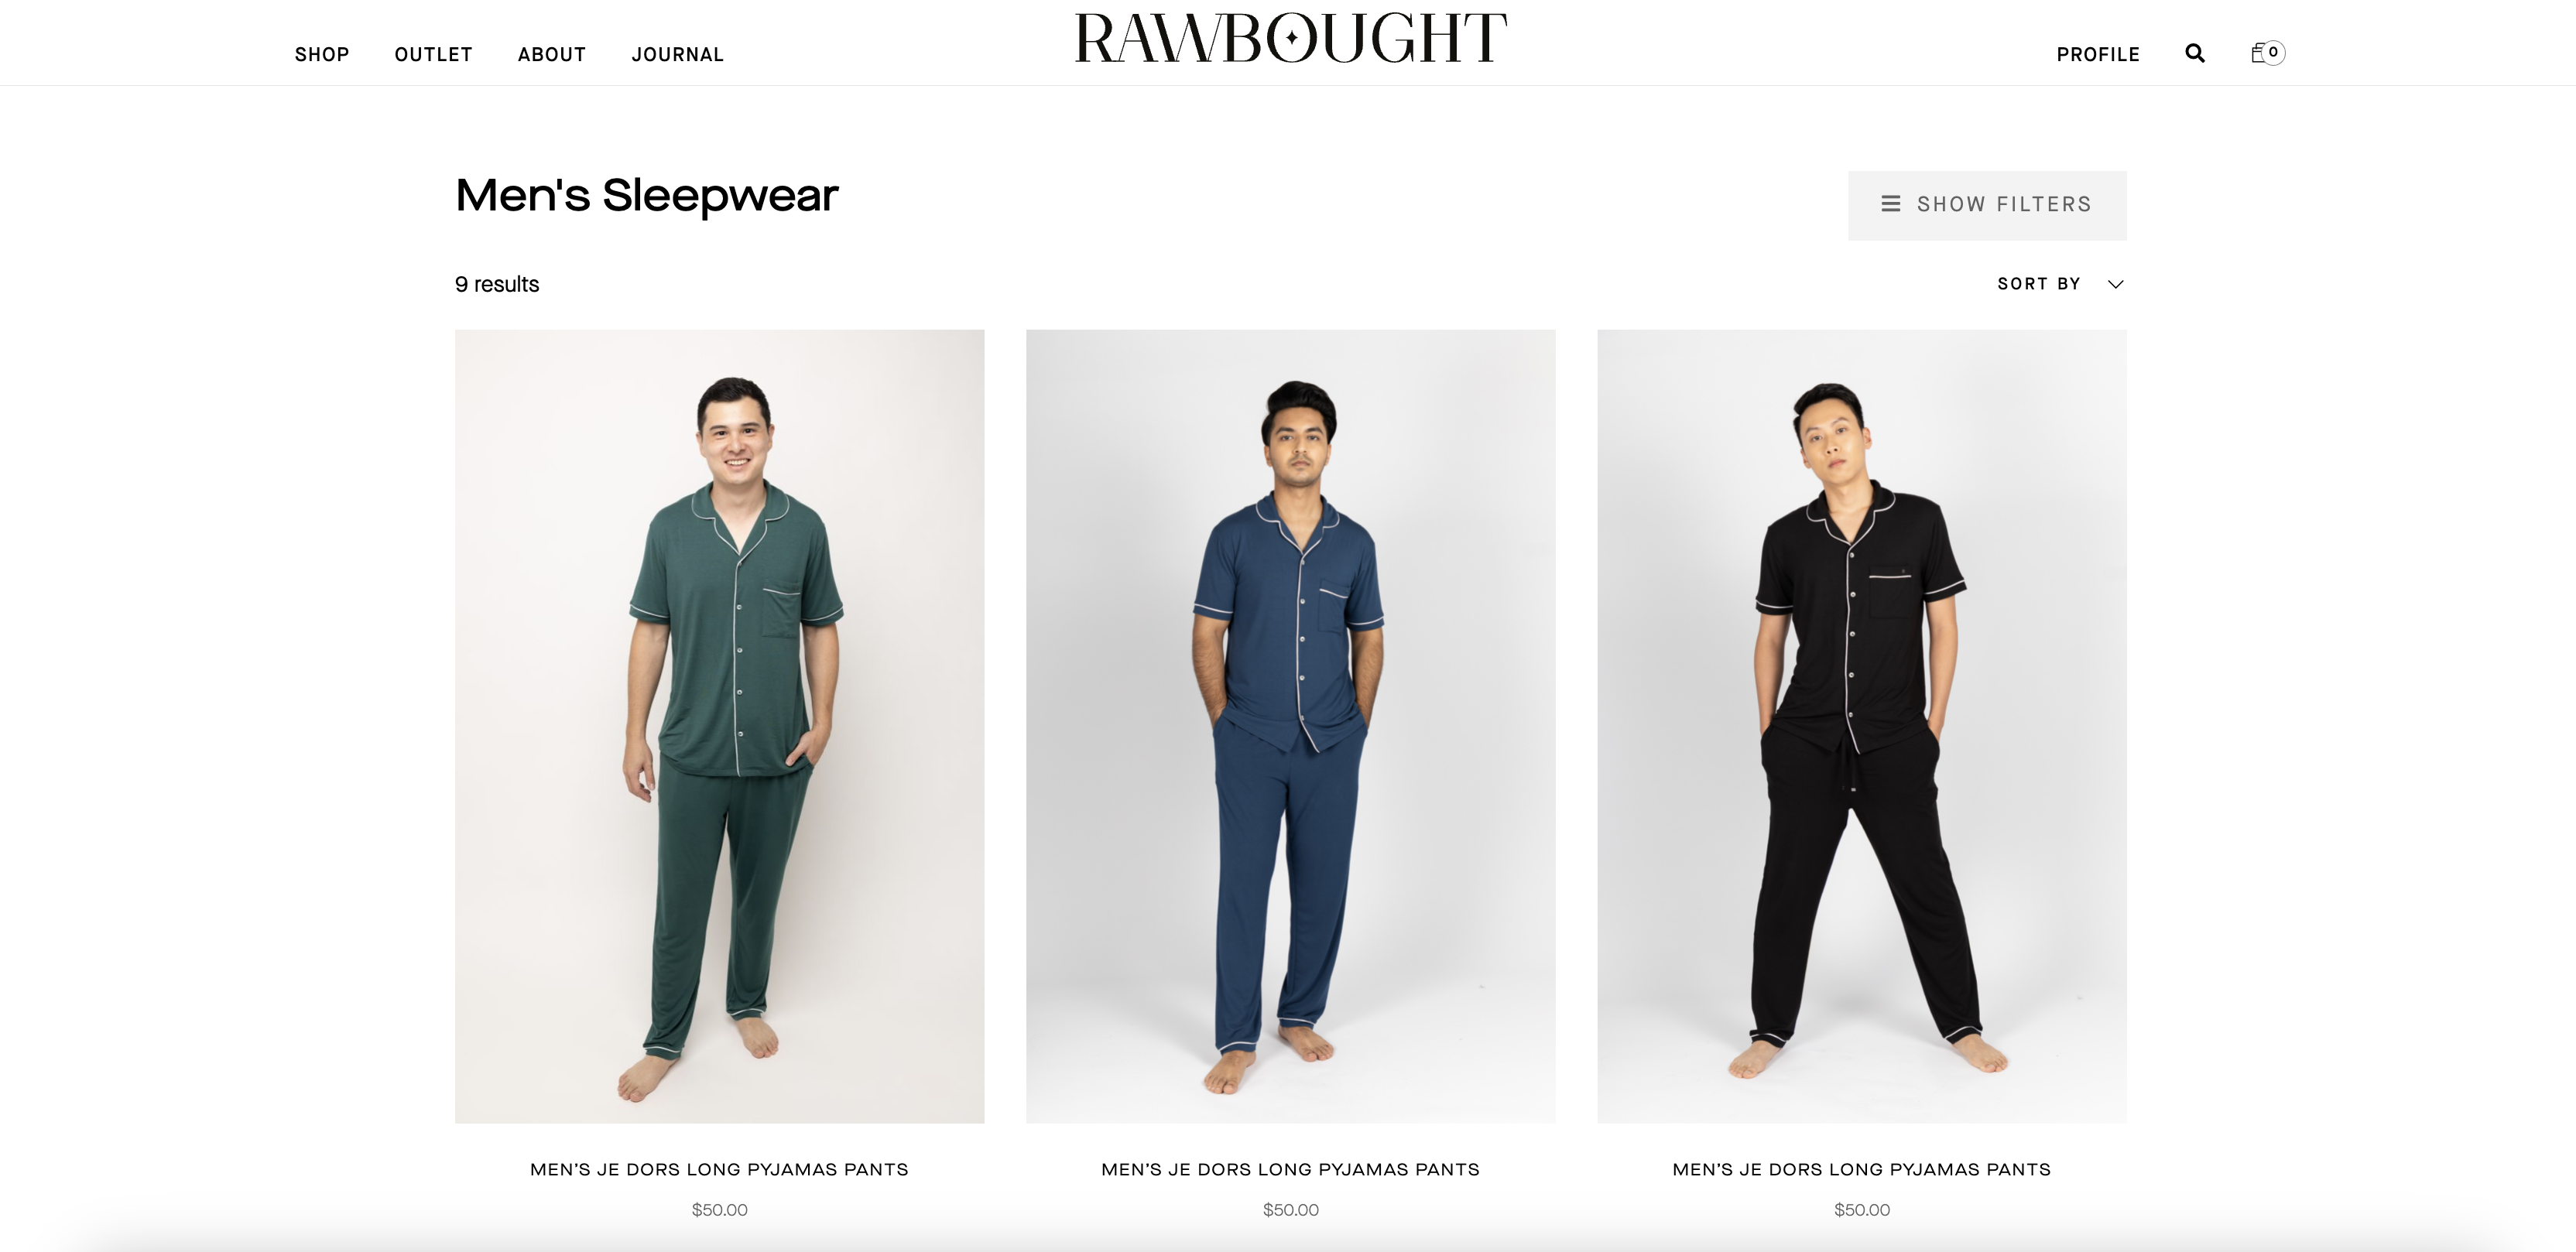 rawbought.com